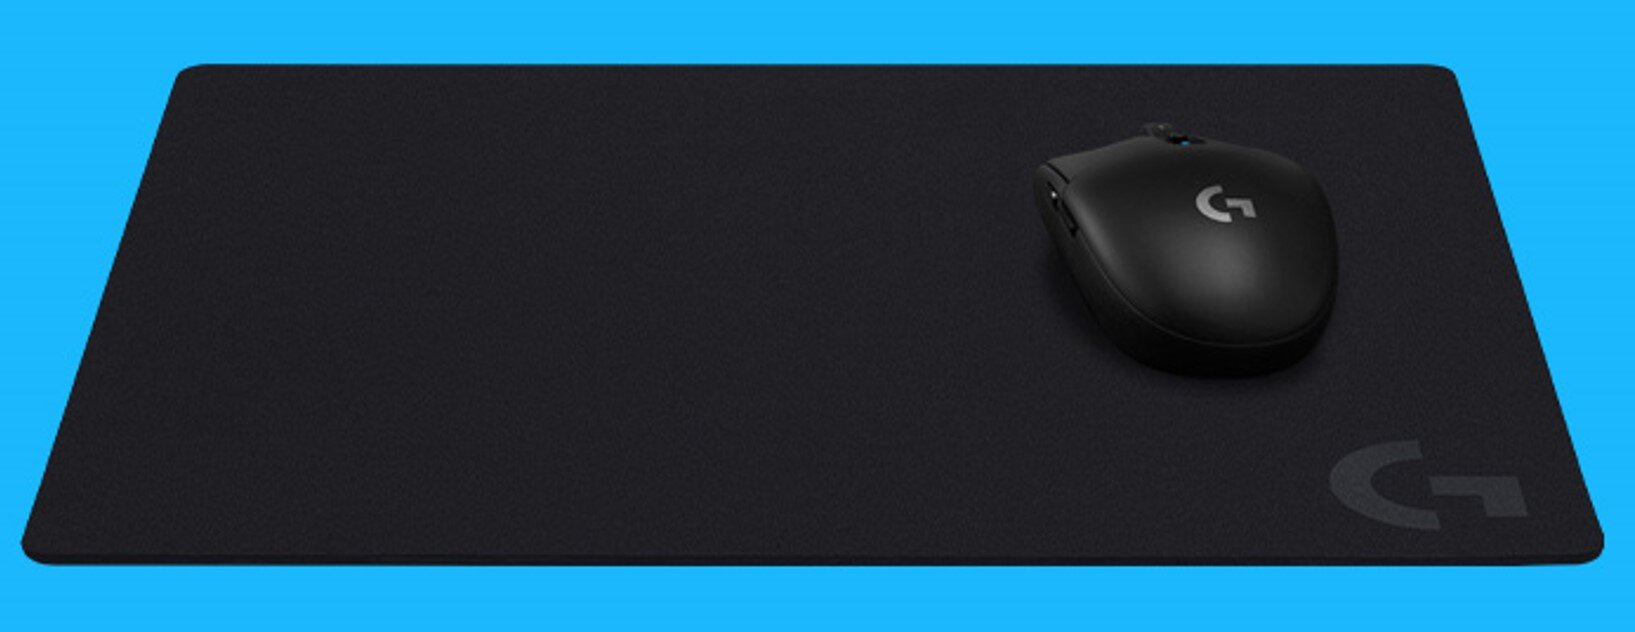 Podkładka LOGITECH G740 materiał tekstura  obszar biurko zwijanie jakość komfort dopasowanie stabilność gry gaming wodoodporna miękka antypoślizgowa guma